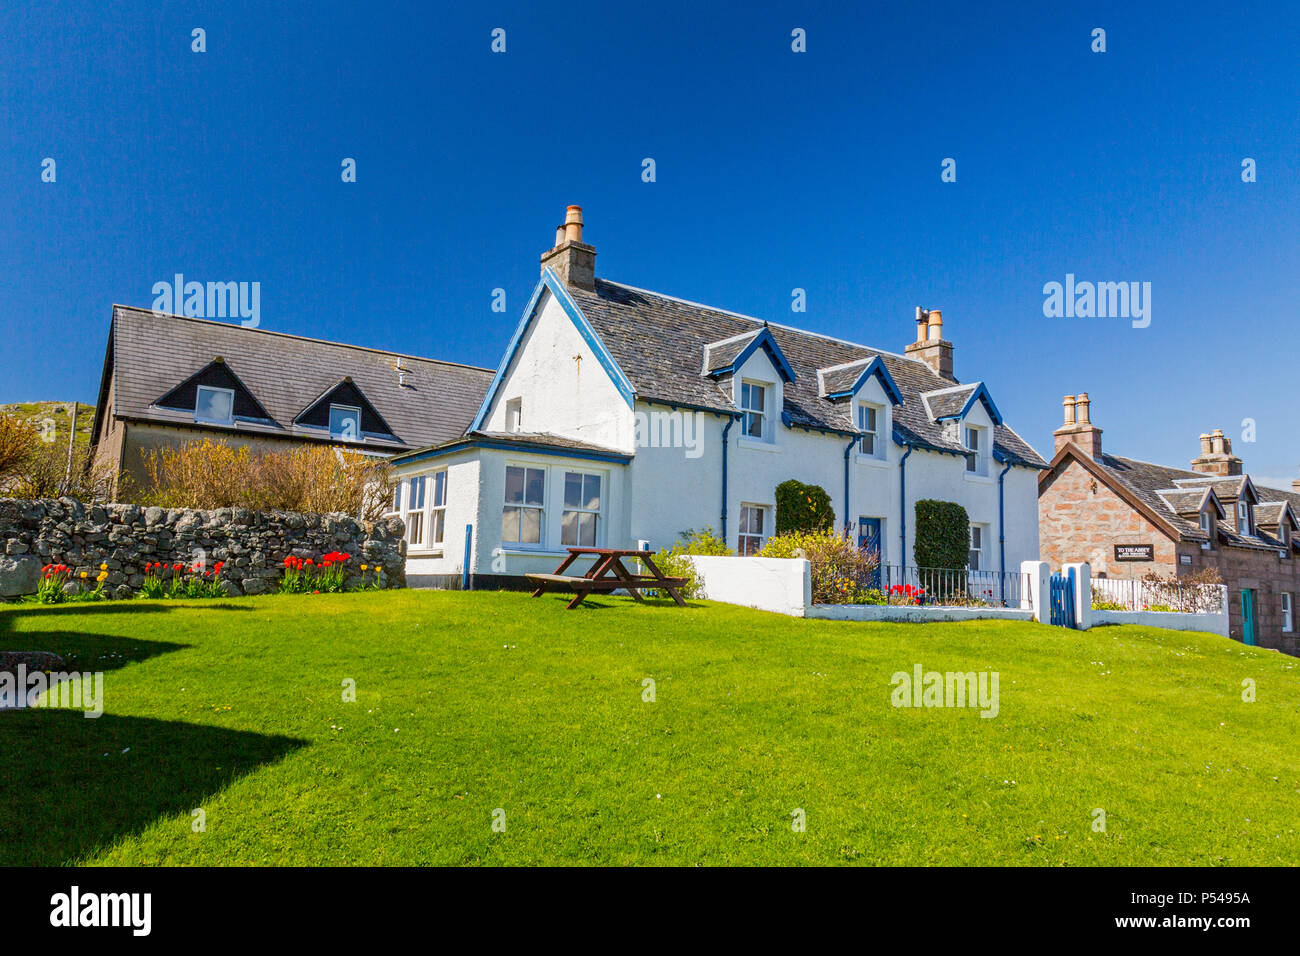 Un cottage coloré à Baile Mor, la plus grande colonie sur l'île d'Iona Hébrides, Argyll and Bute, Ecosse, Royaume-Uni Banque D'Images